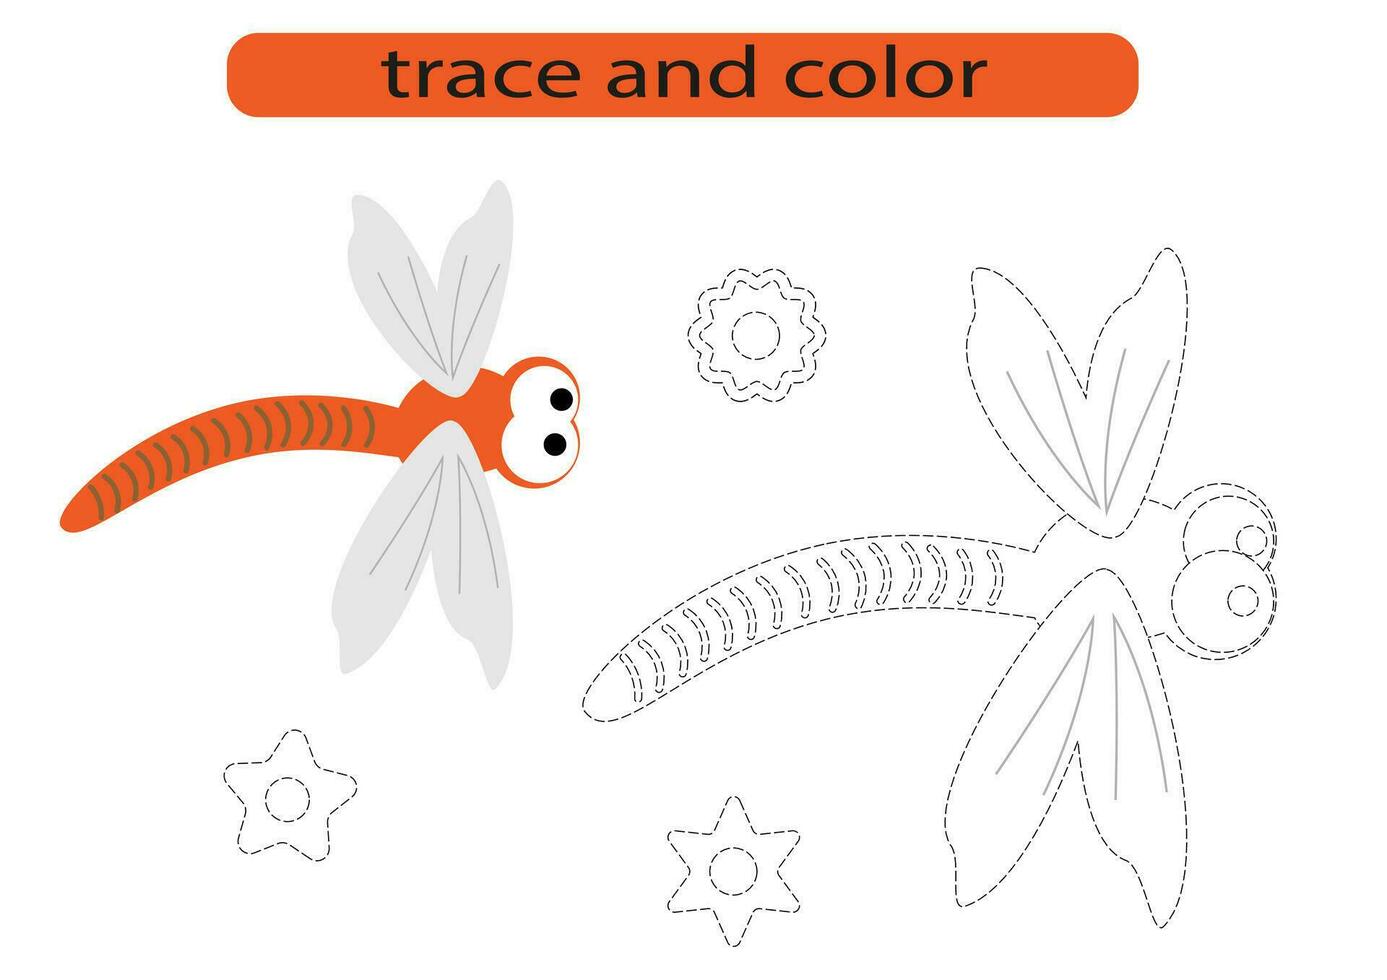 rastro y color.traza y color para preescolares.escritura a mano práctica para niños. vector